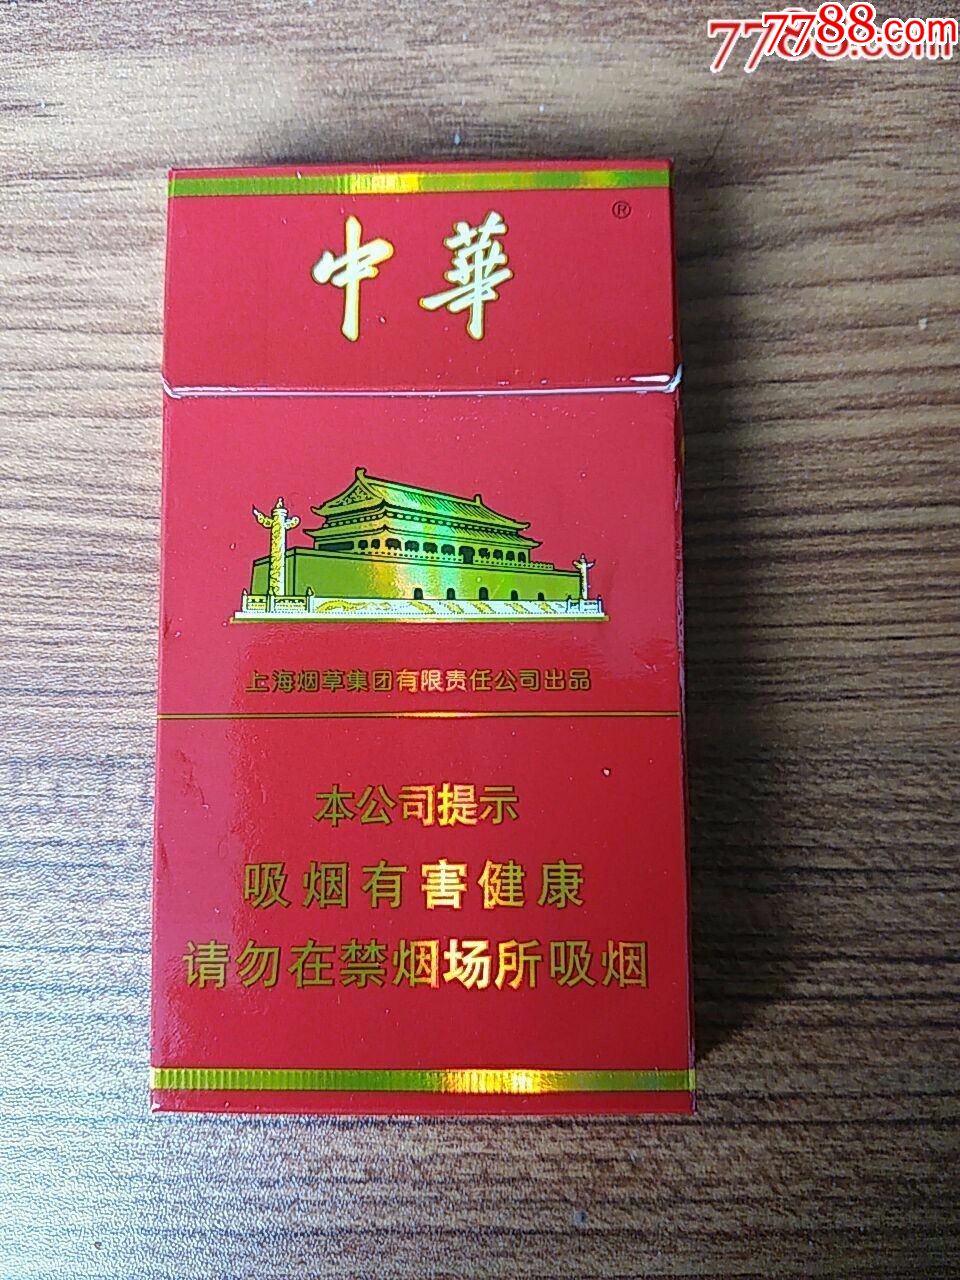 中华迷你小盒烟图片